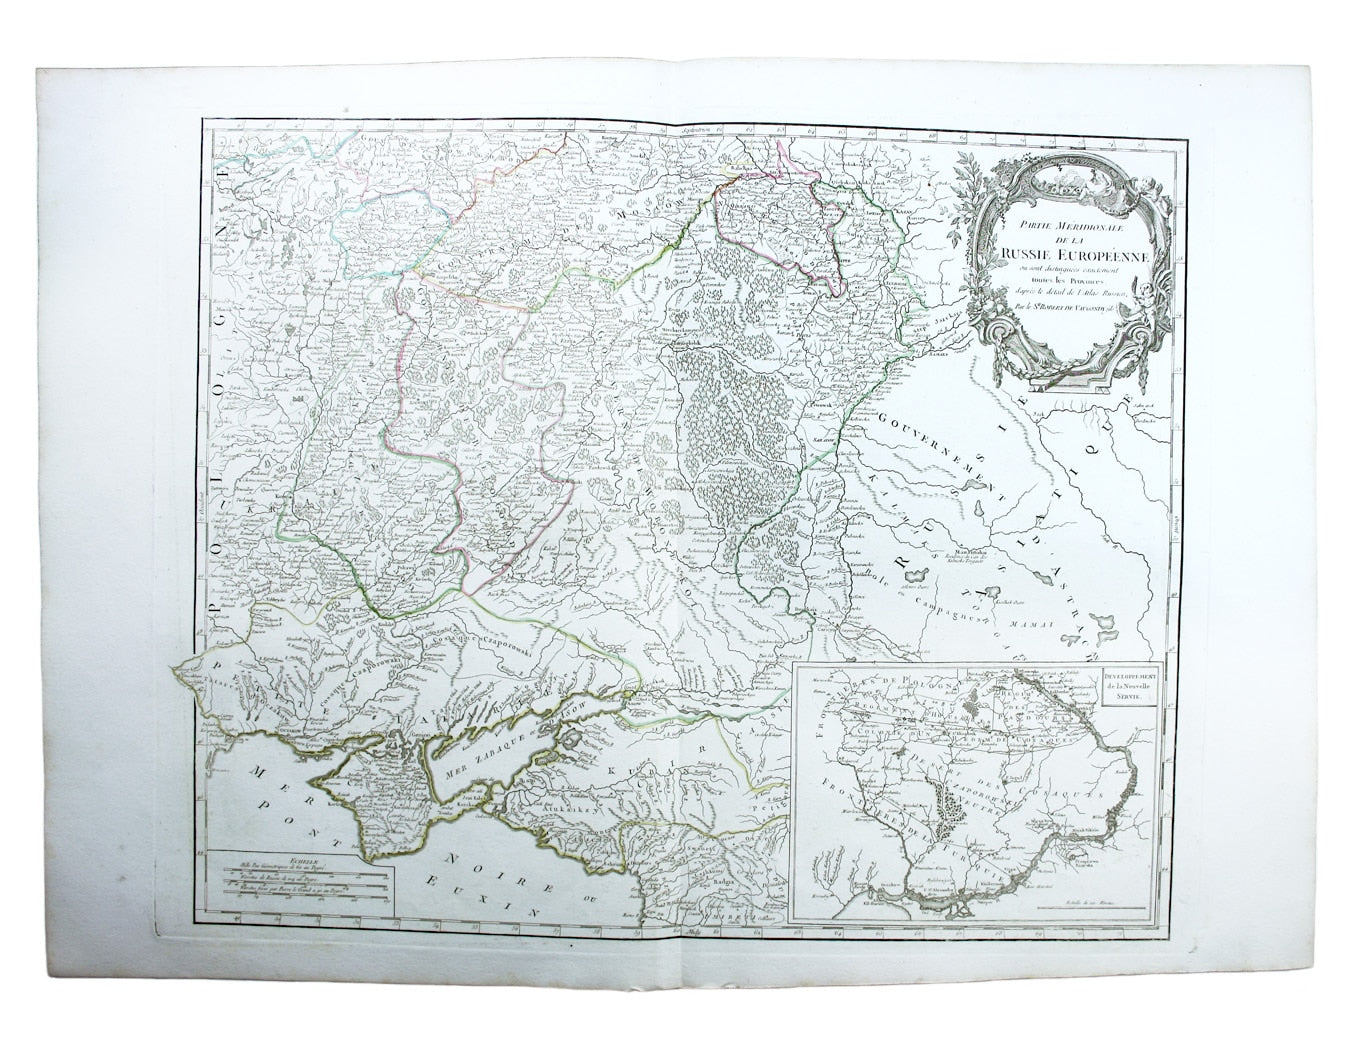 Robert de Vaugondy’s Map of Southern Russia in Europe